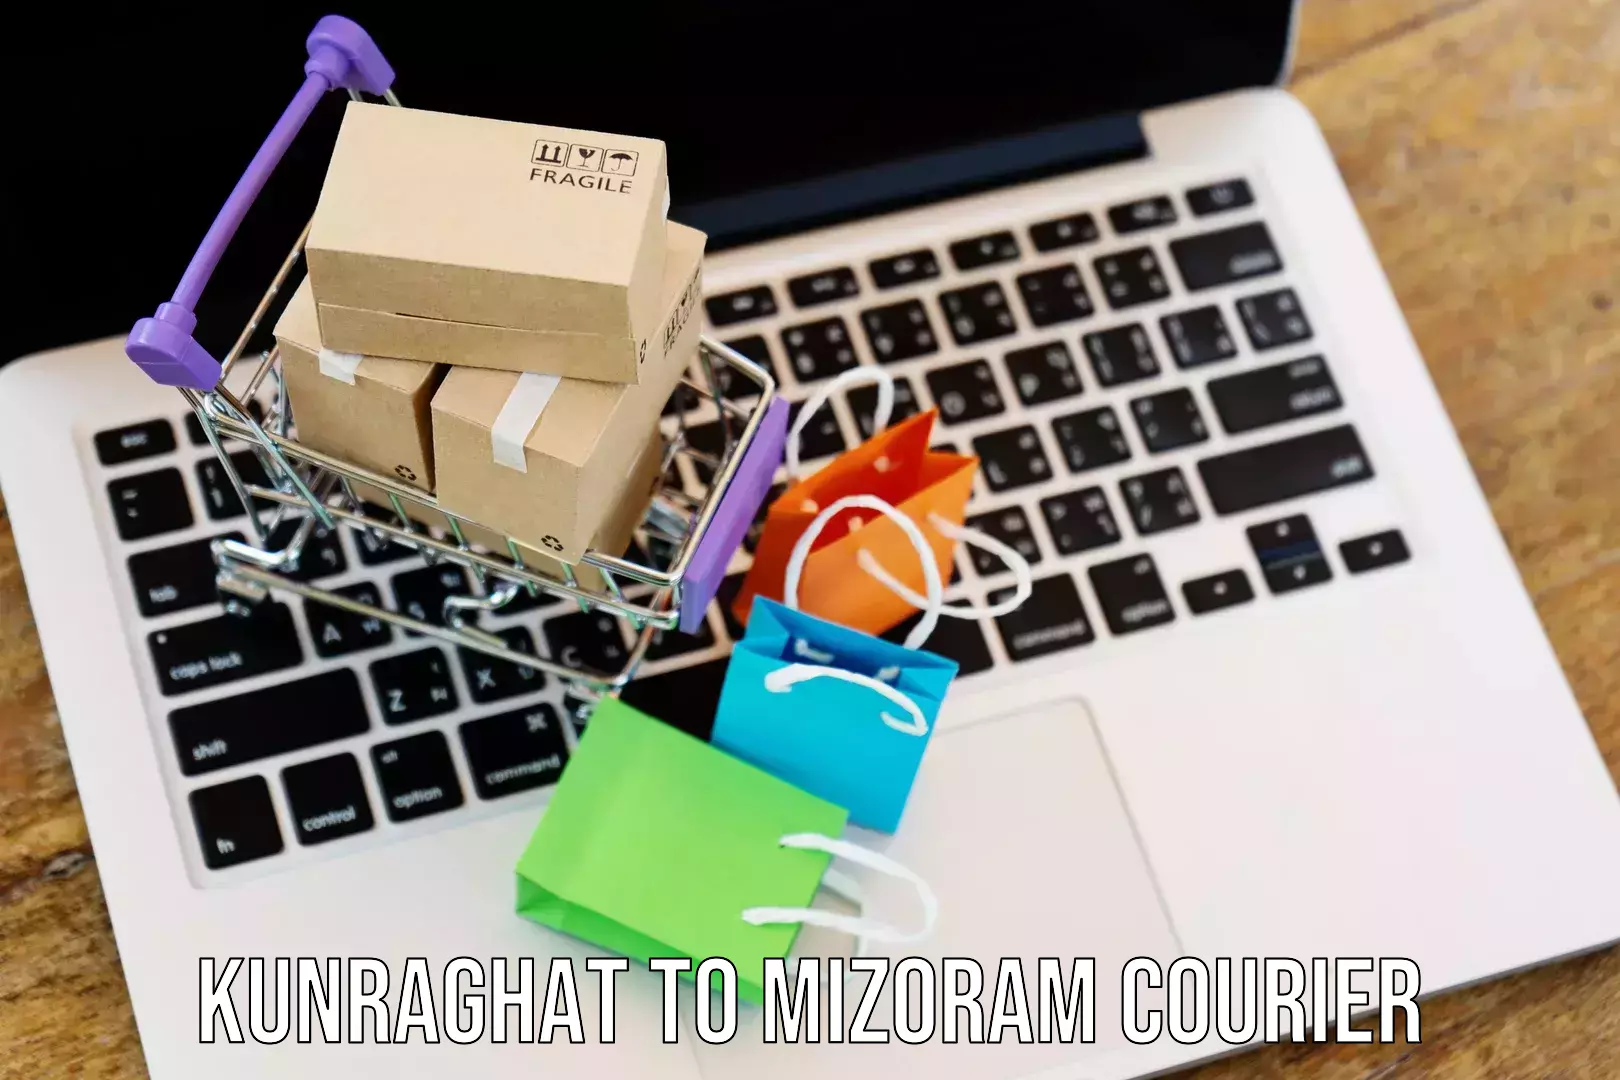 Express mail service Kunraghat to Mizoram